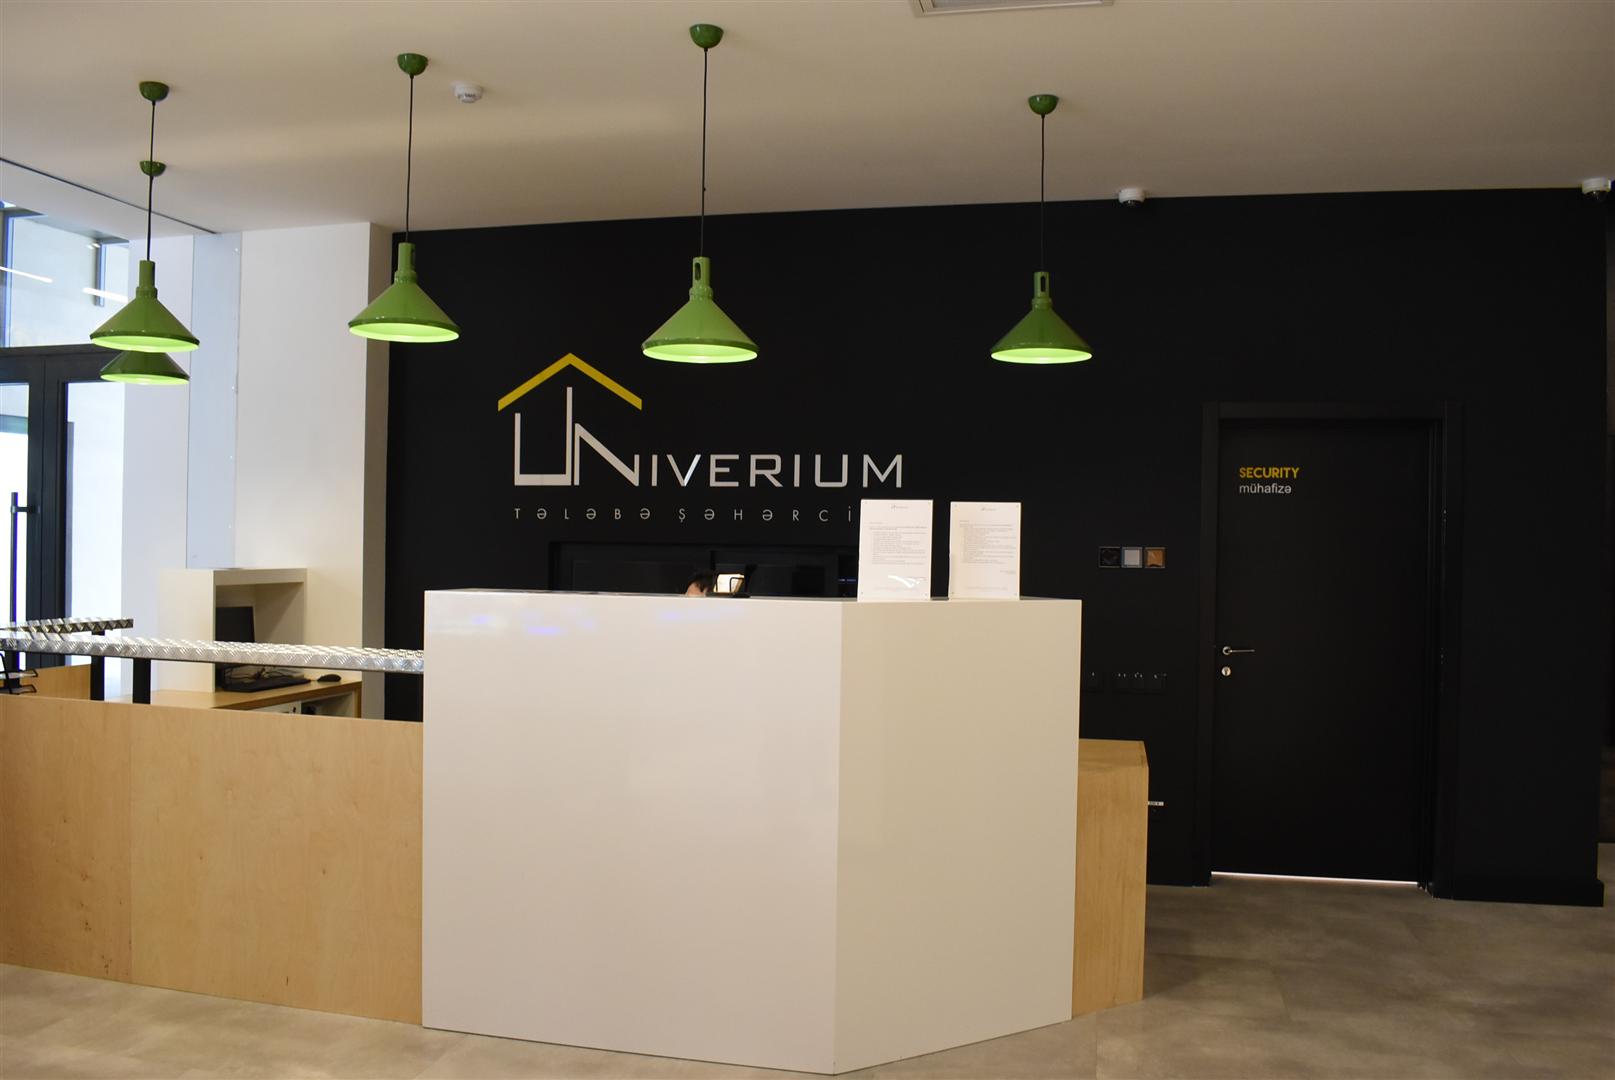 Univerium: студенческий островок в центре Баку